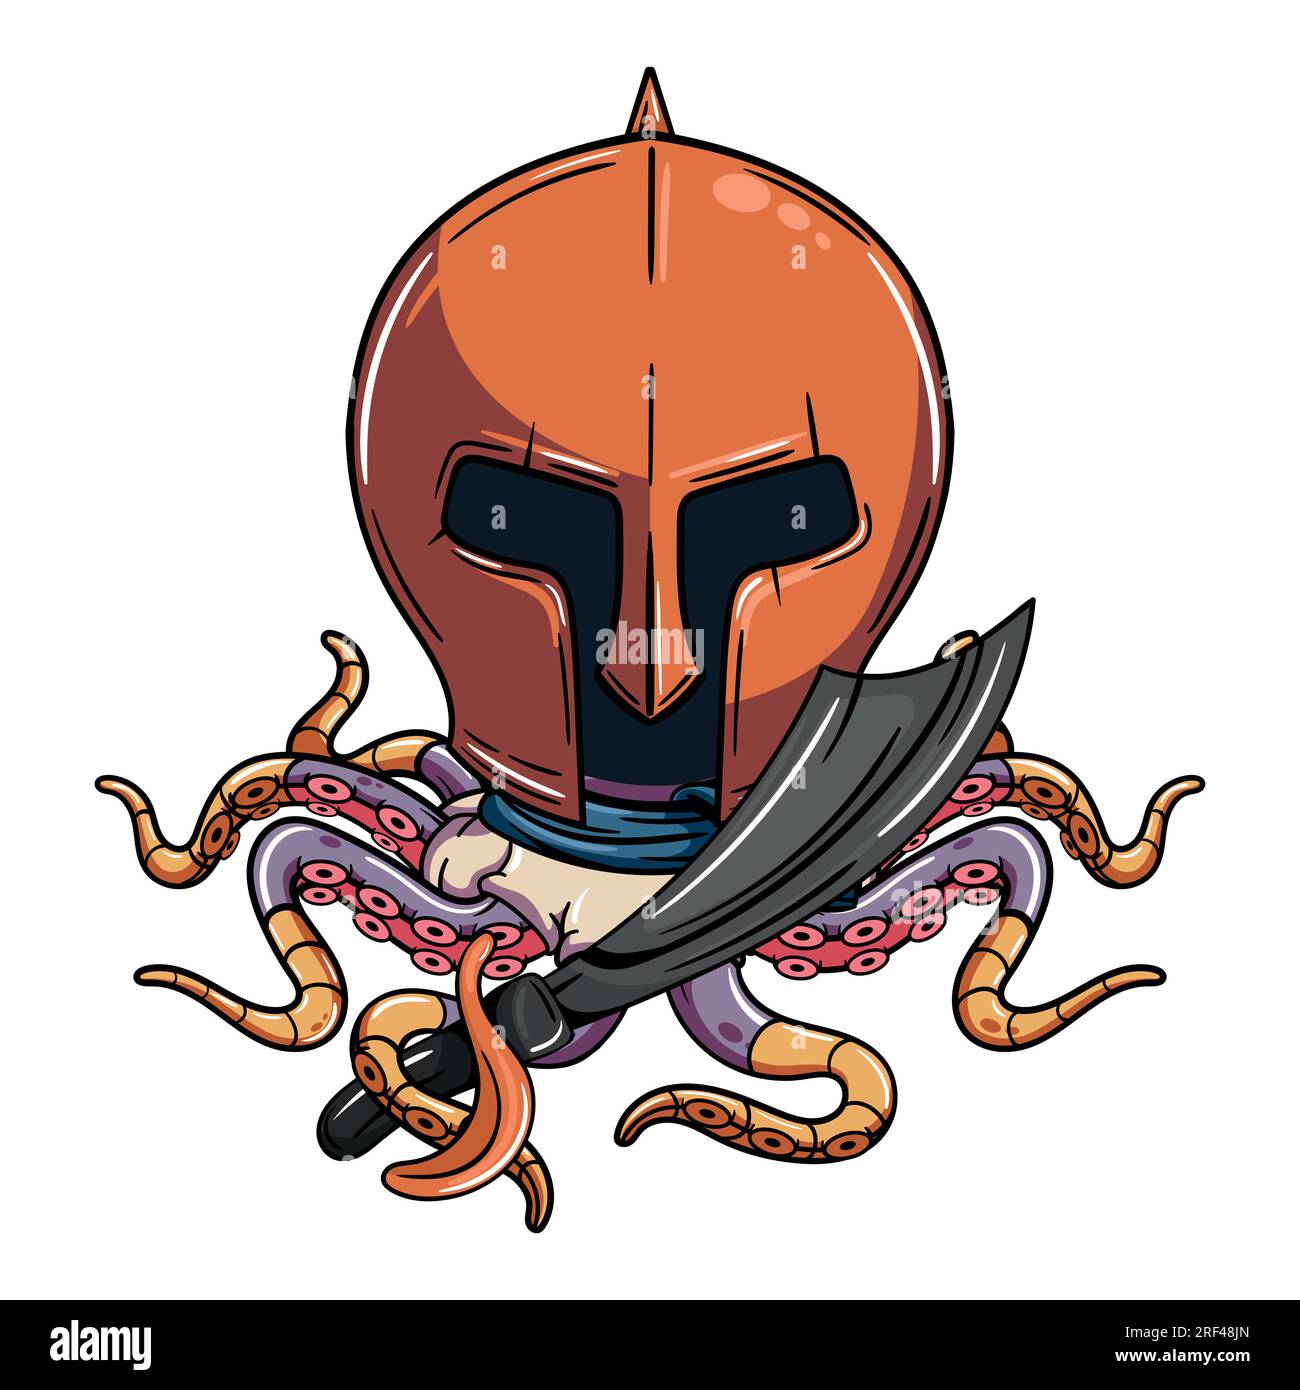 Cartoon Cyborg Octopus Charakter mit mittelalterlichem Gladiatorenhelm und Piratenschwert. Illustration für Fantasie, Science-Fiction und Abenteuer-Comics Stock Vektor